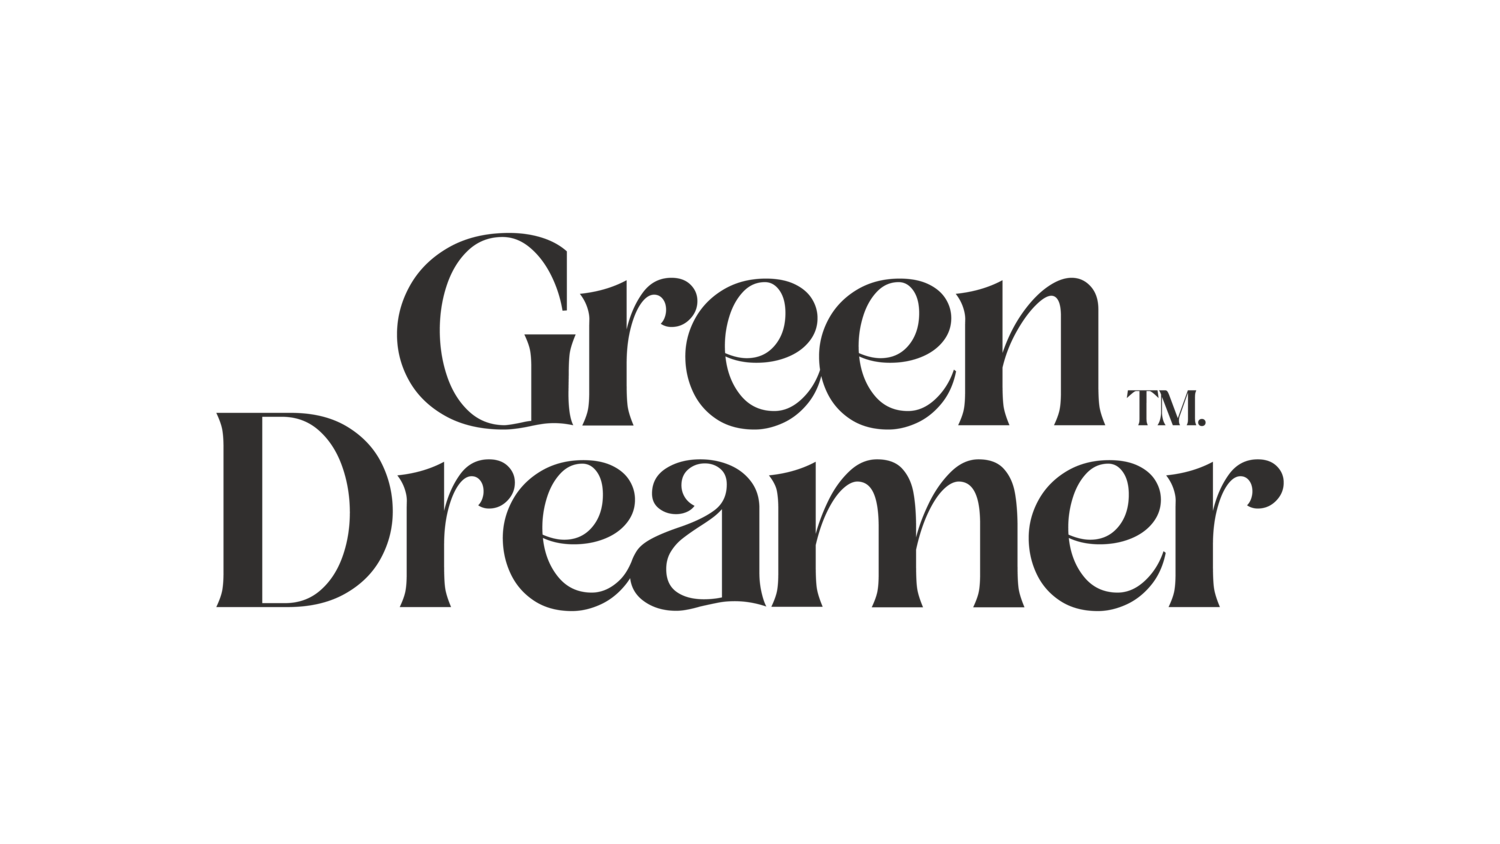 GREEN DREAMER